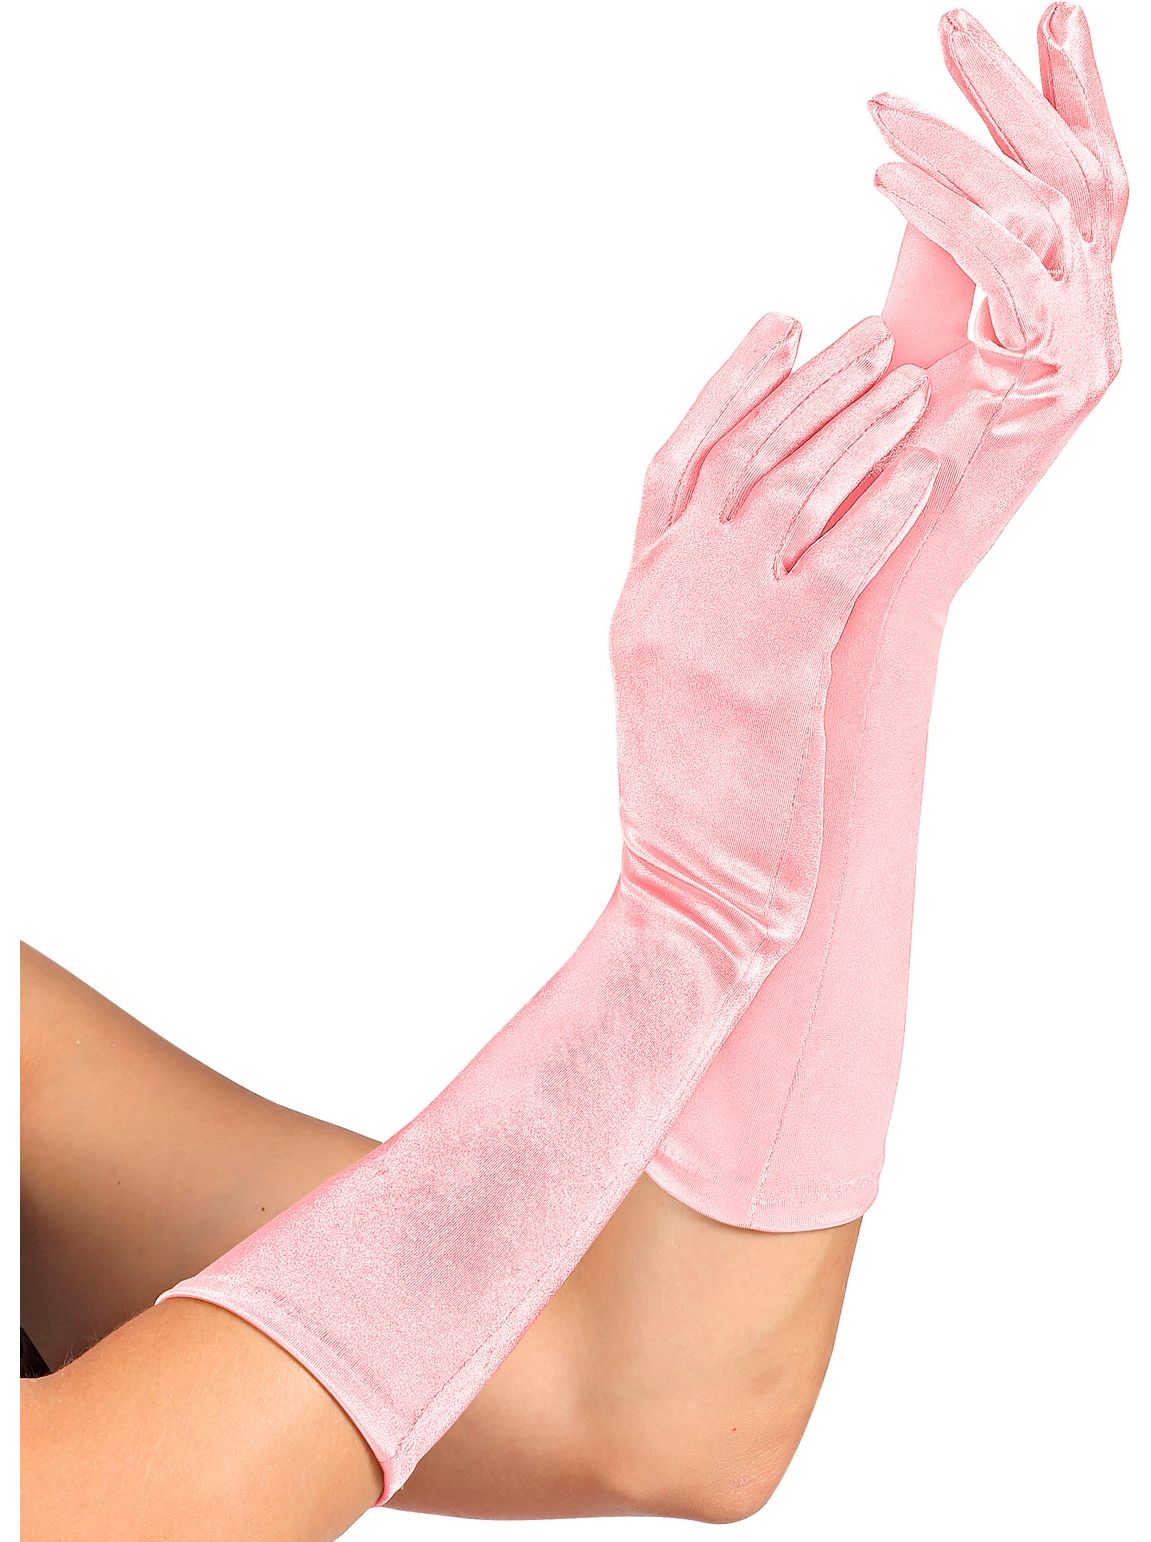 Lichtroze satijnen middellange handschoenen